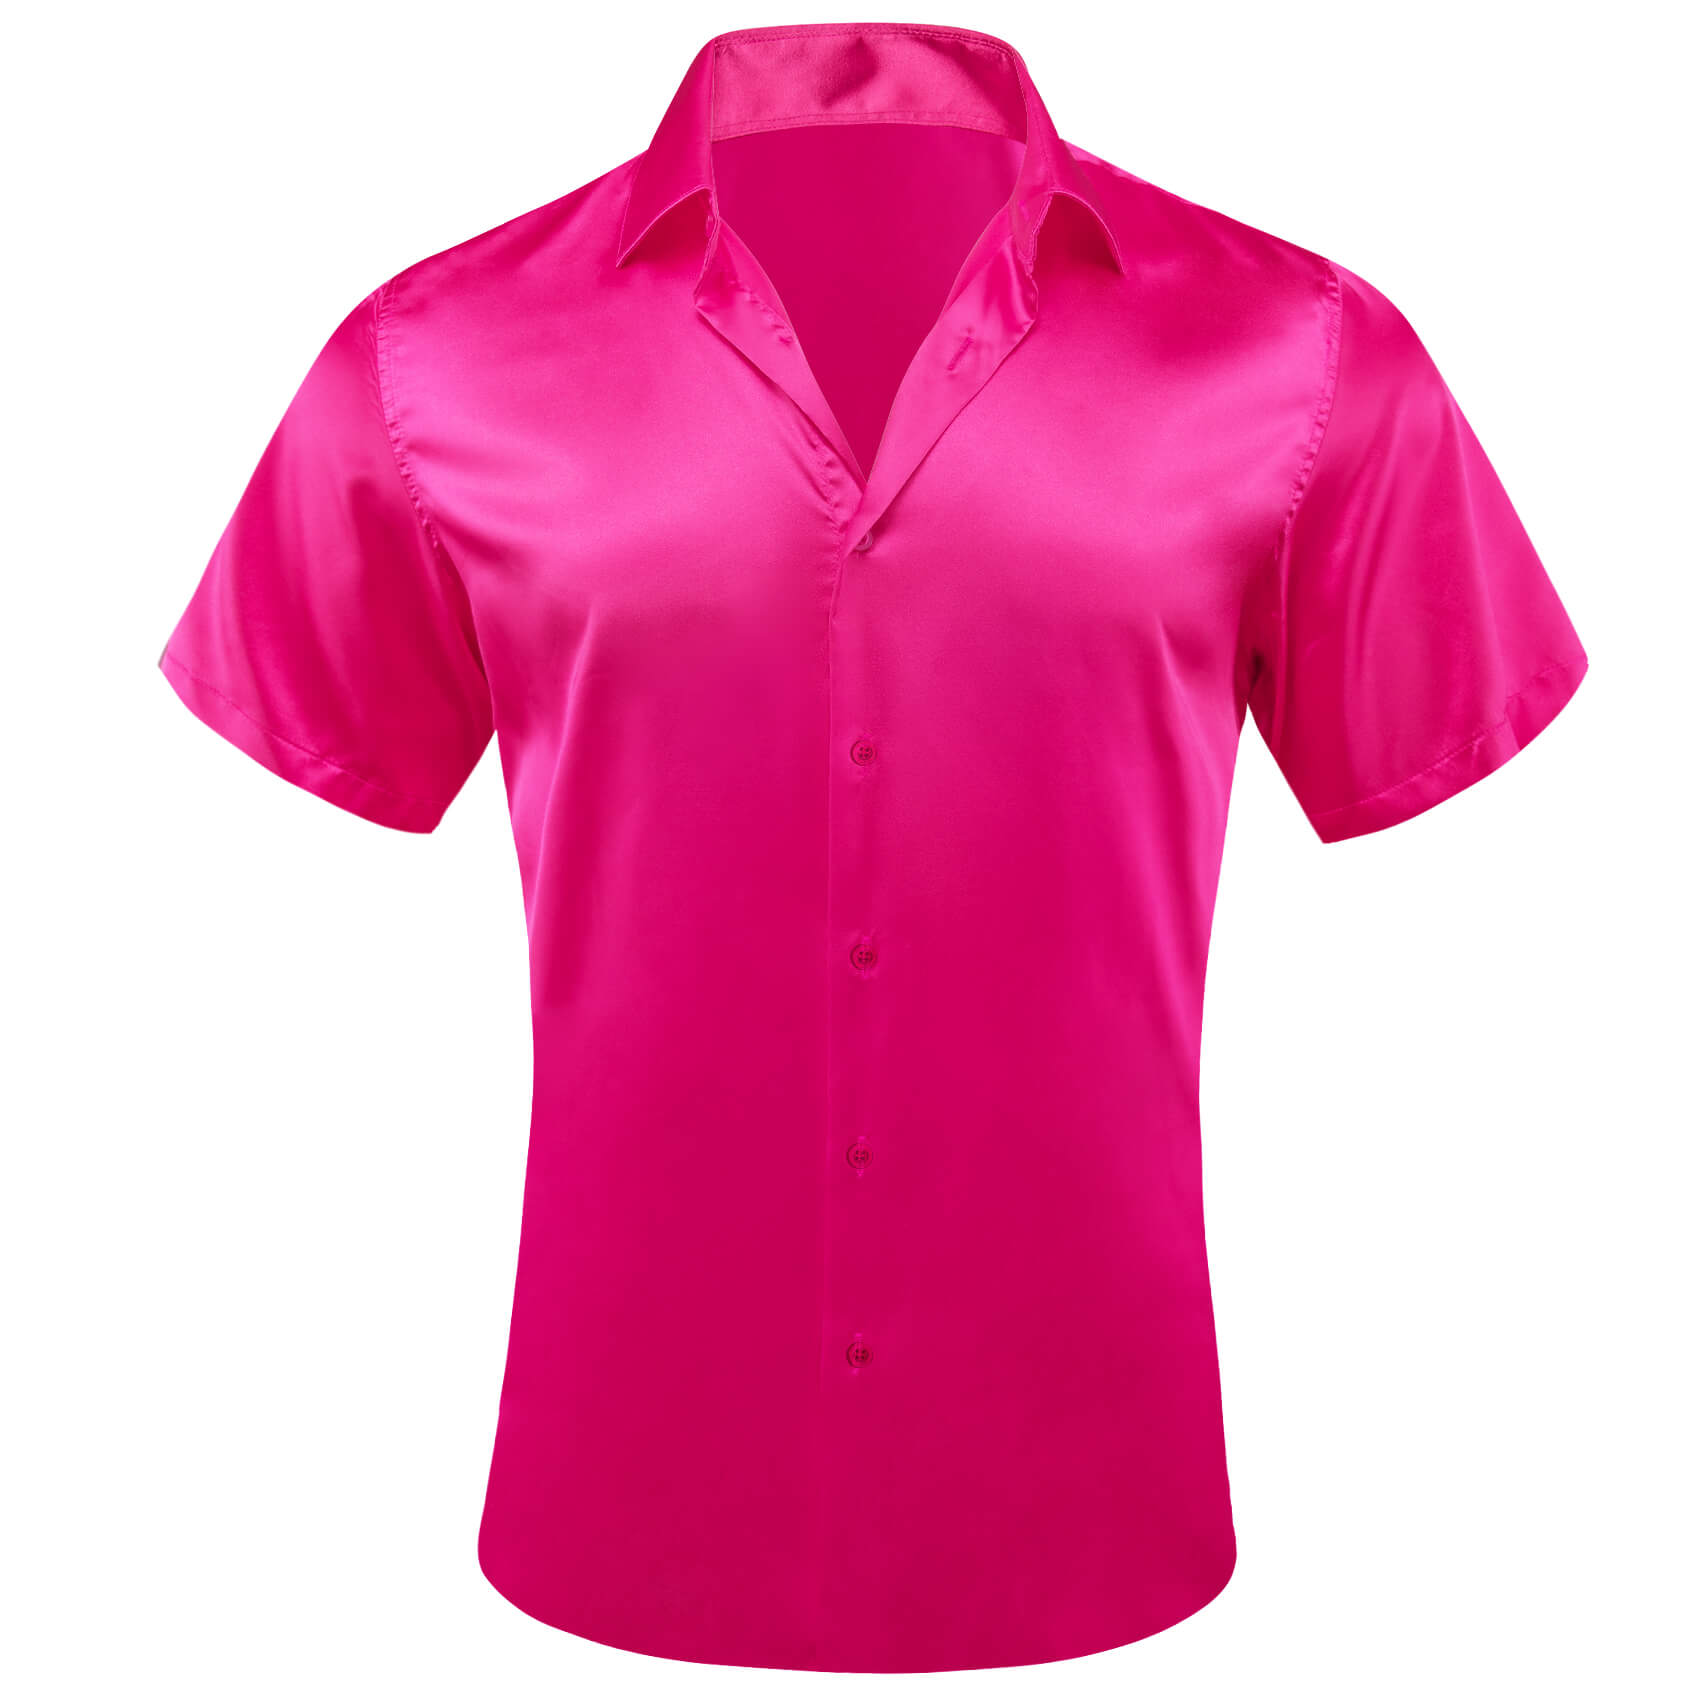  Short Sleeve Shirt Solid DeepPink Shirt